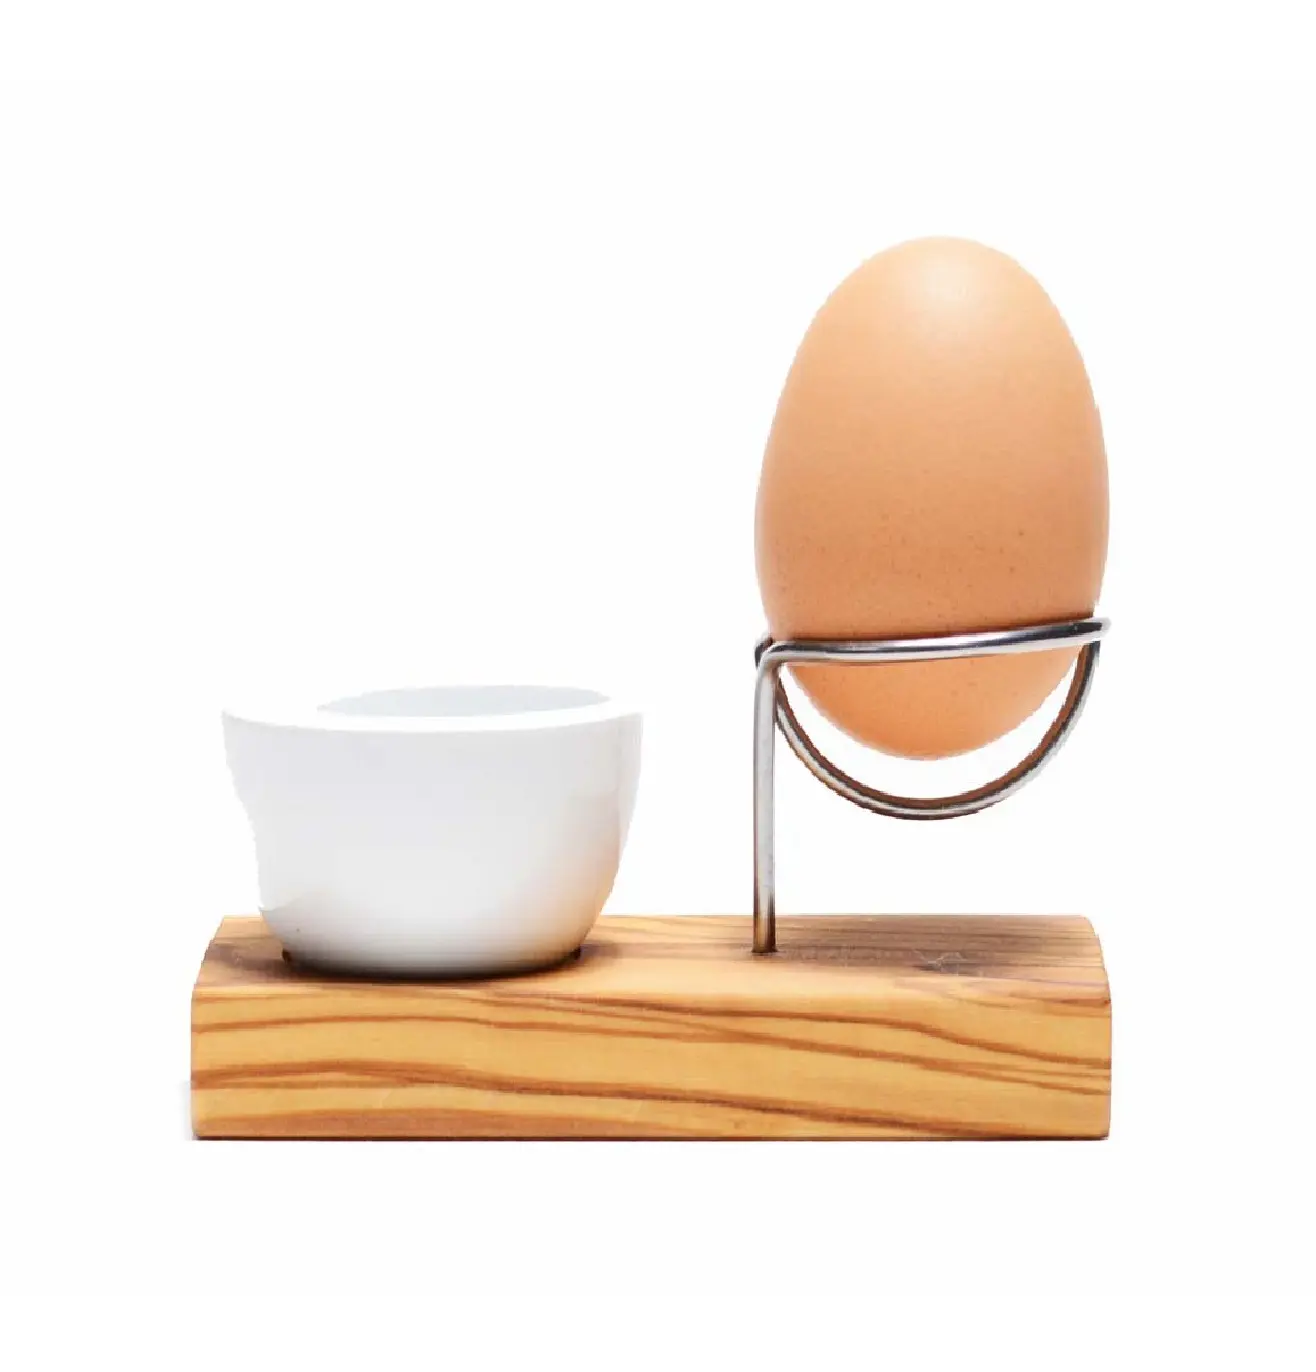 Innovativo porta uova in legno di ulivo e acciaio inossidabile accompagnato da un piccolo stampino in porcellana che terrà il guscio d'uovo rotto